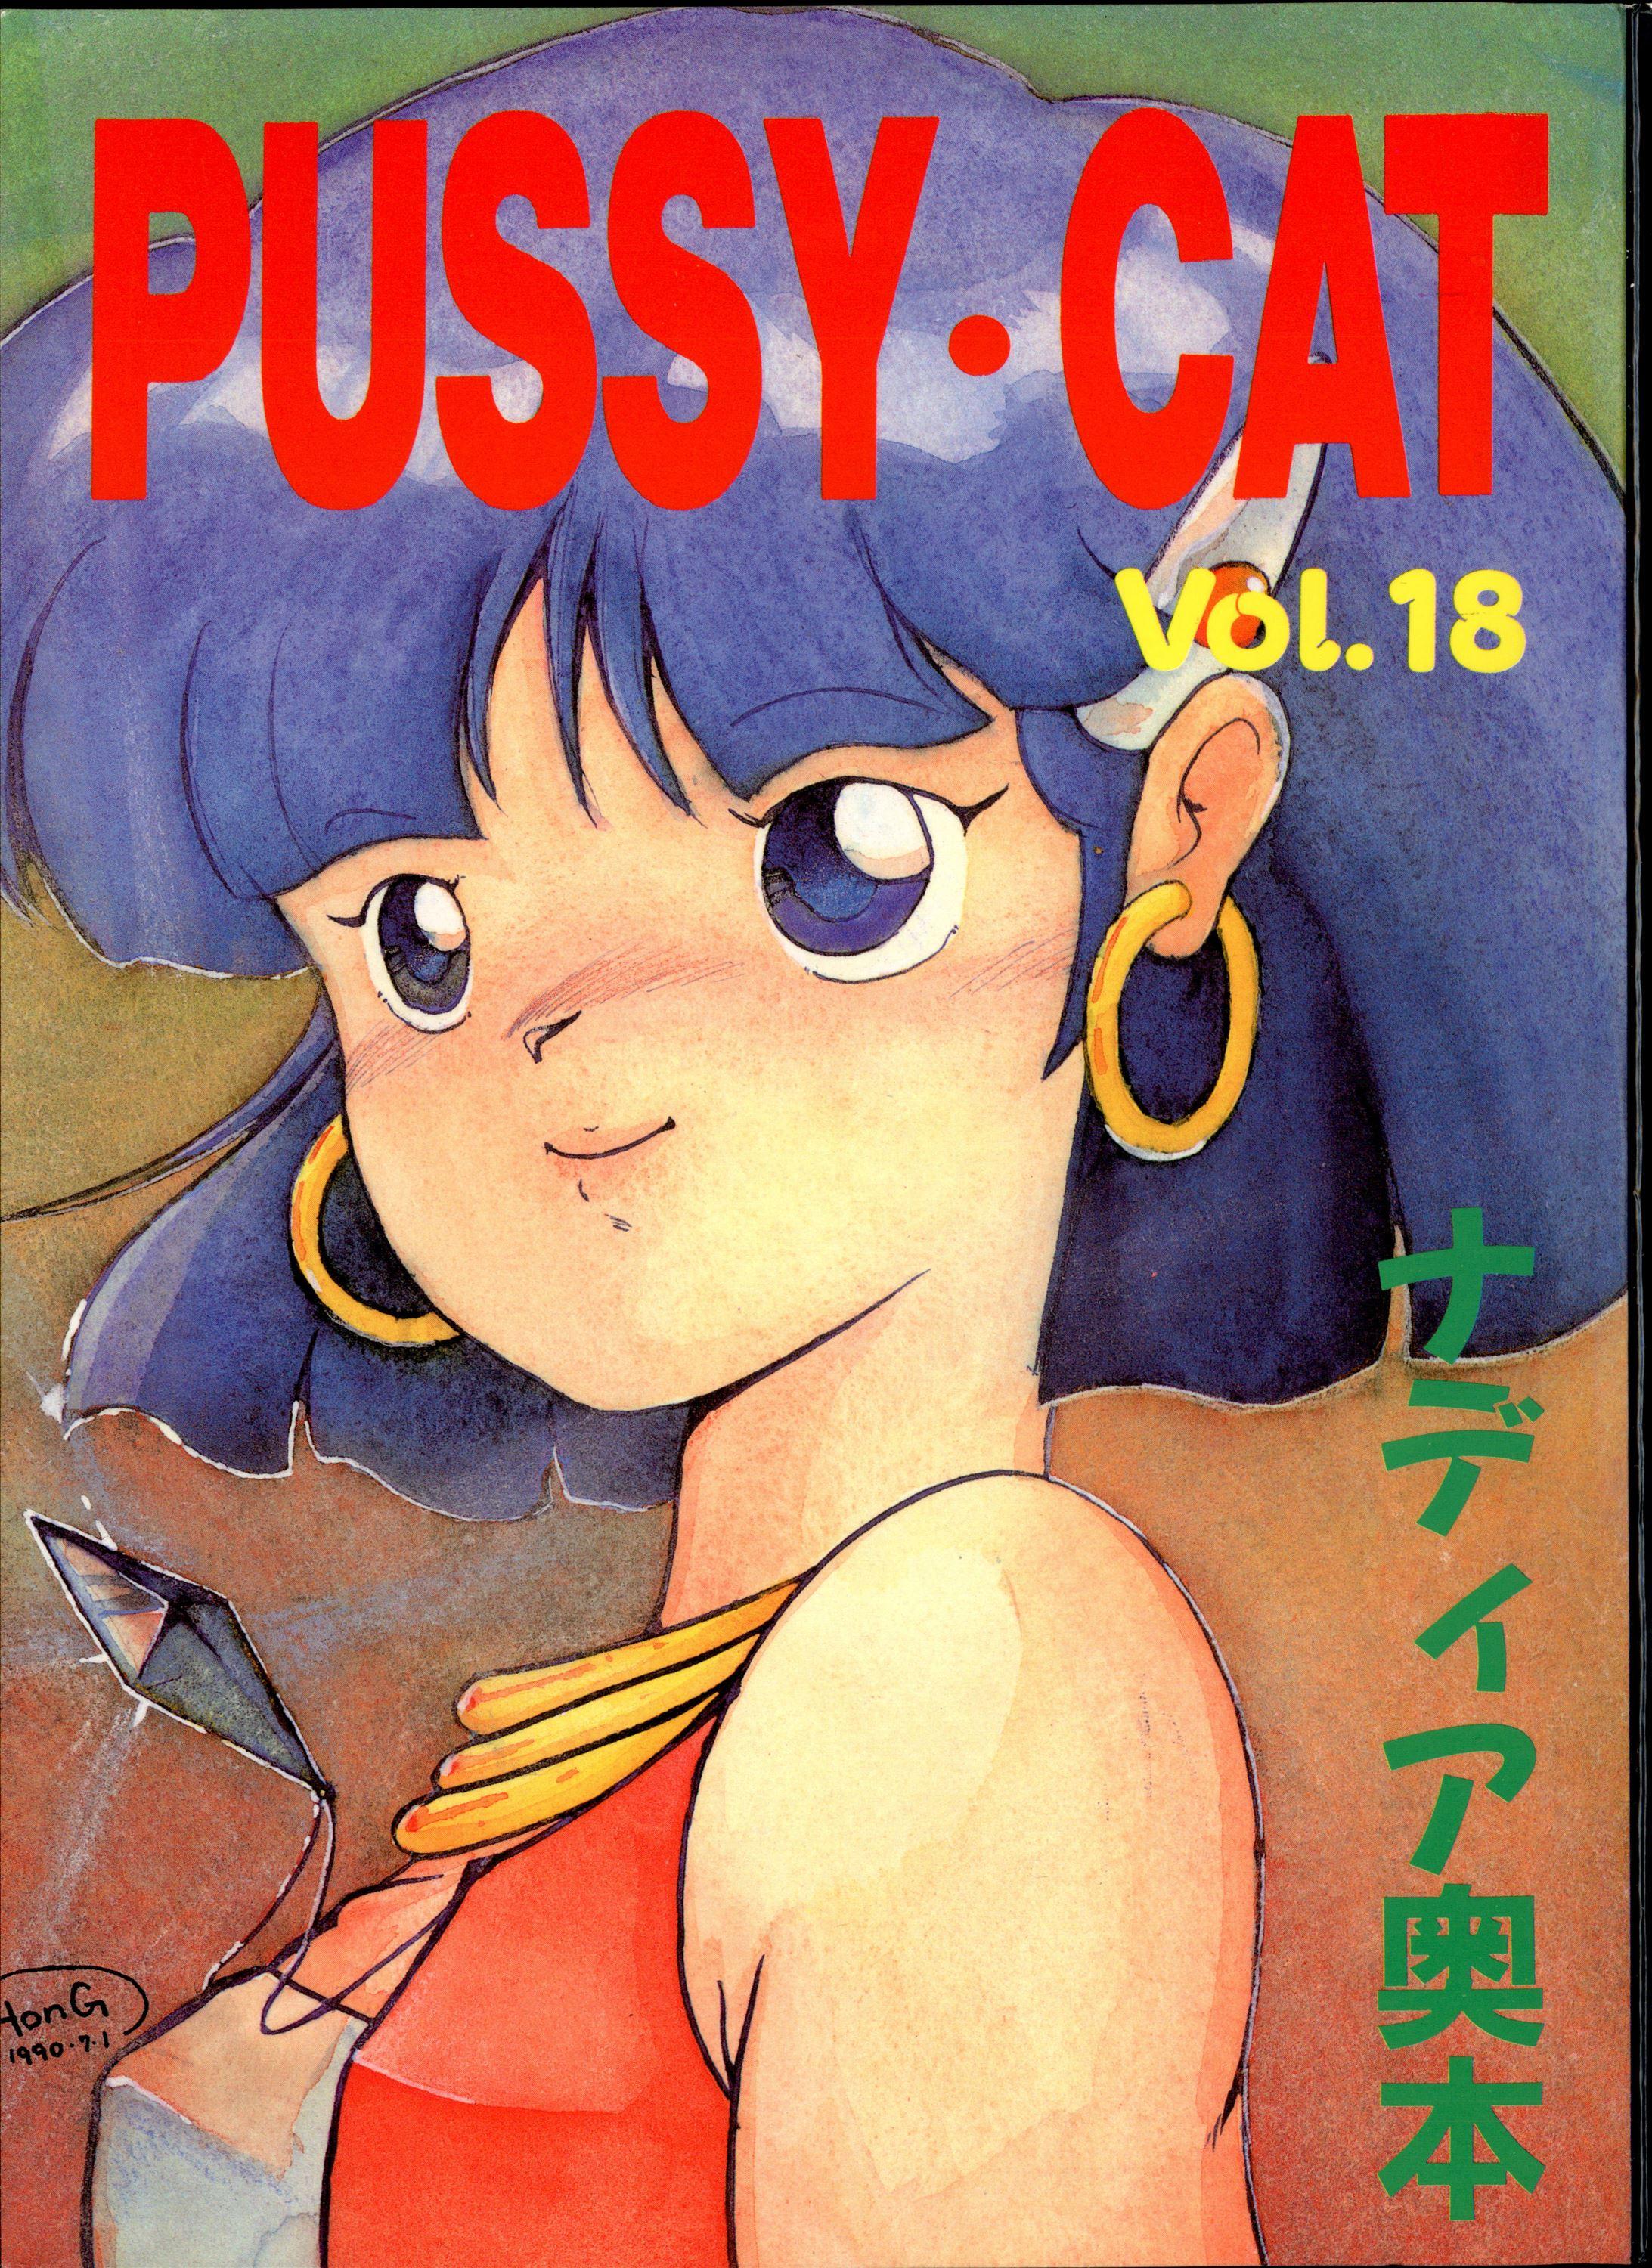 Toes PUSSY CAT Vol.18 Nadia Okuhon - Fushigi no umi no nadia 3x3 eyes Magical angel sweet mint Mexico - Page 2